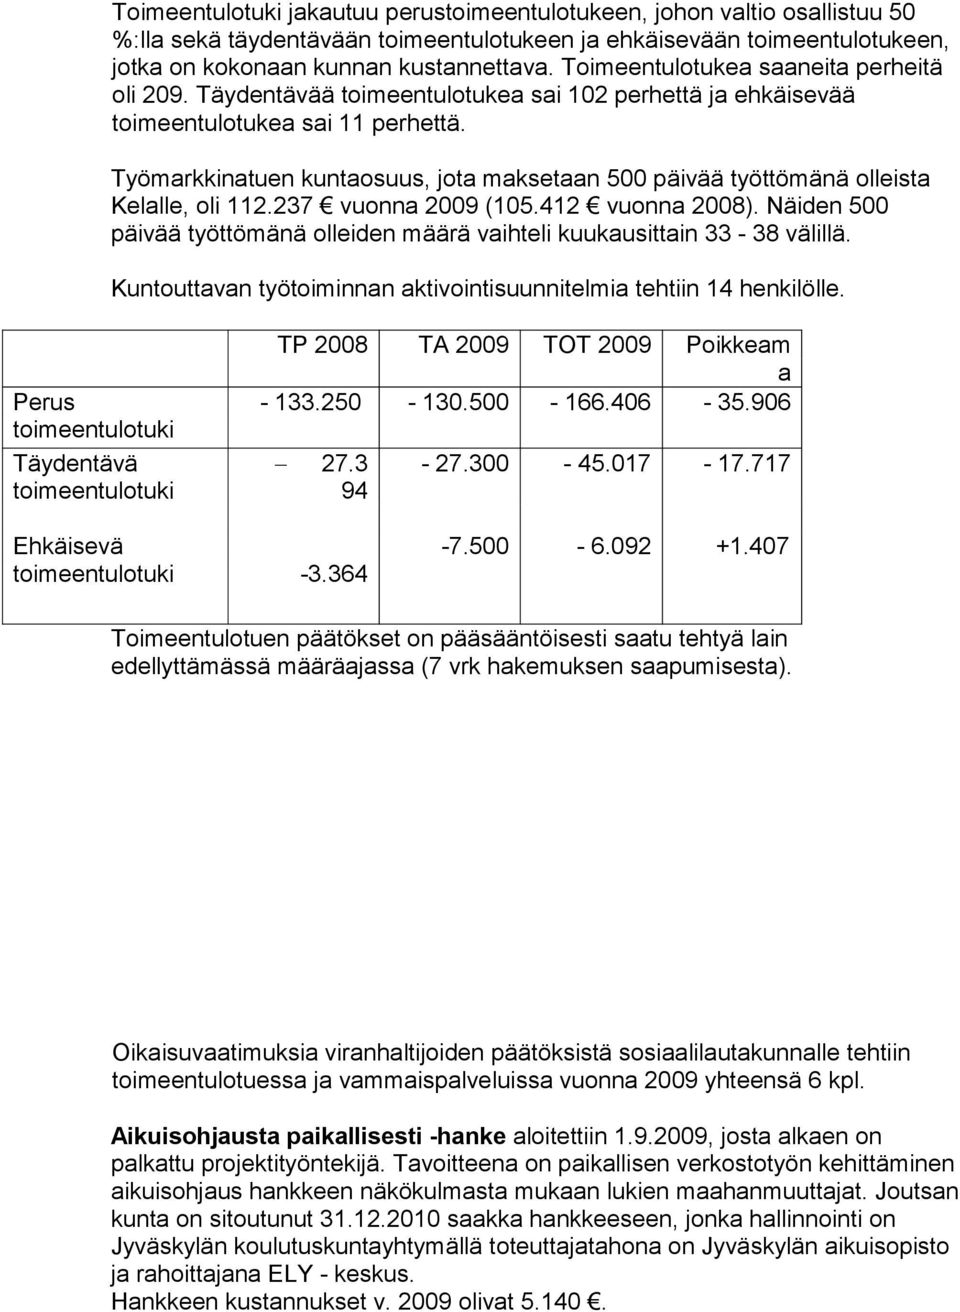 Työmarkkinatun kuntaosuus, jota makstaan 500 päivää työttömänä ollista Klall, oli 112.237 vuonna 2009 (105.412 vuonna 2008).